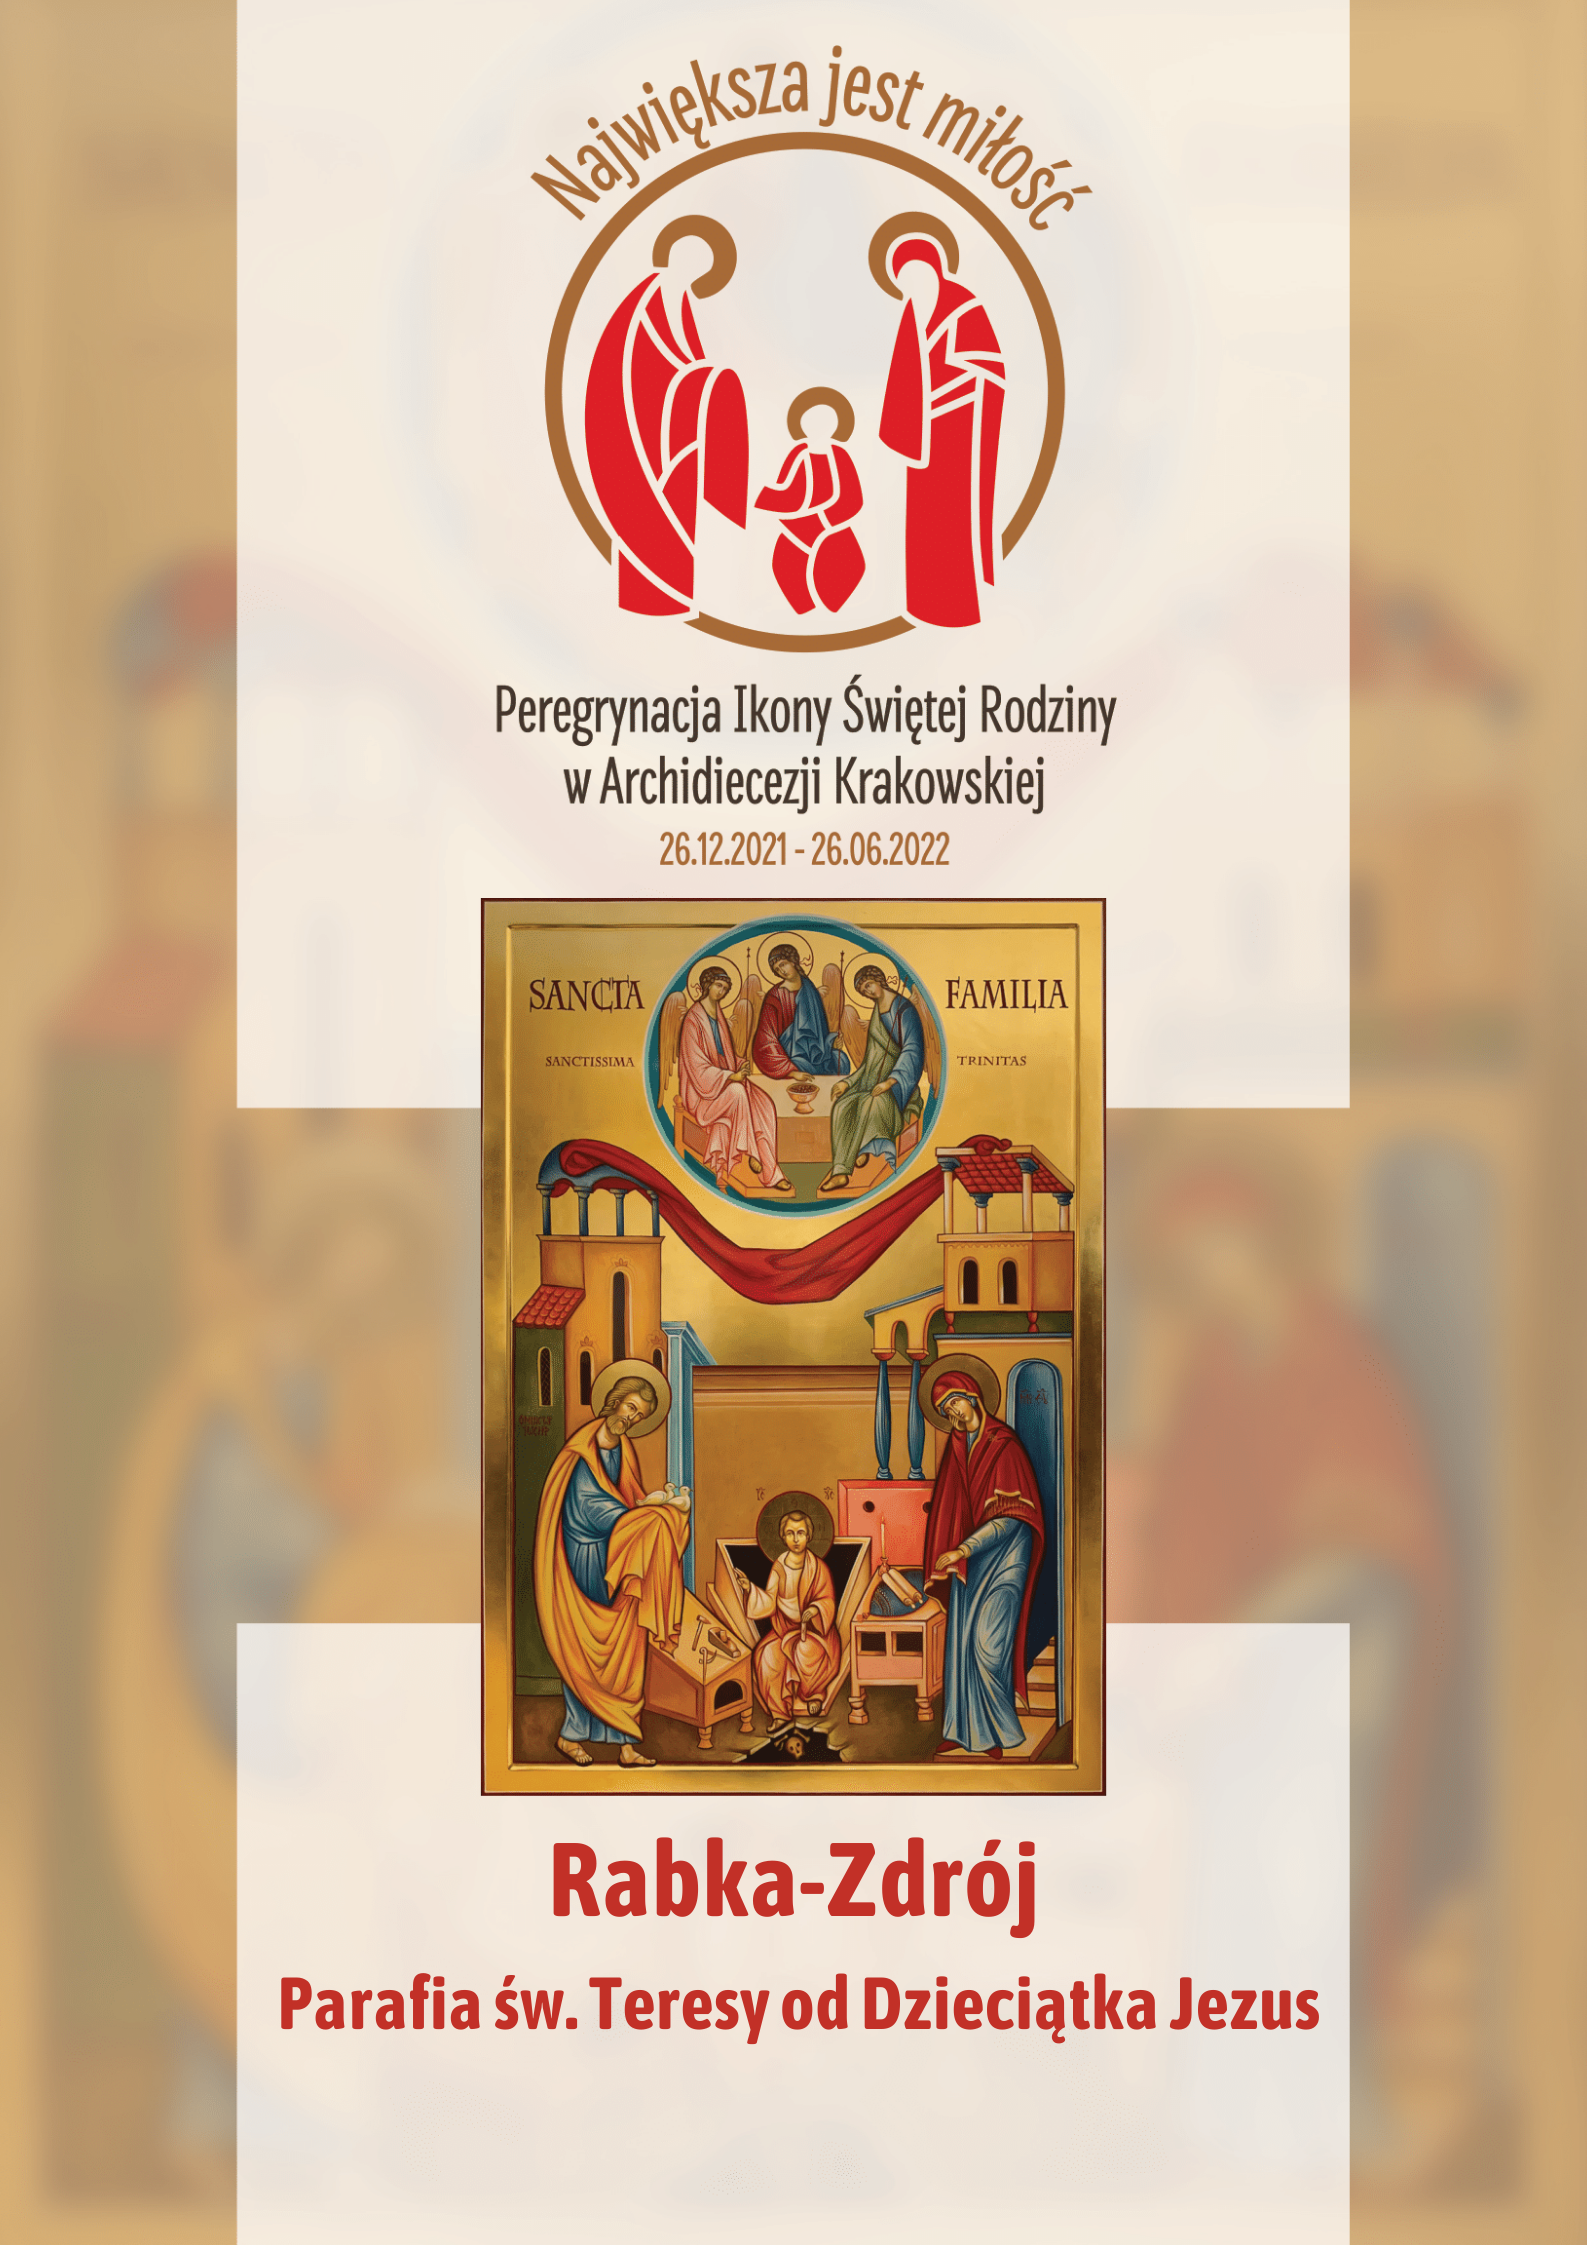 Ikona Świętej Rodziny w parafii św. Teresy od Dzieciątka Jezus w Rabce-Zdroju